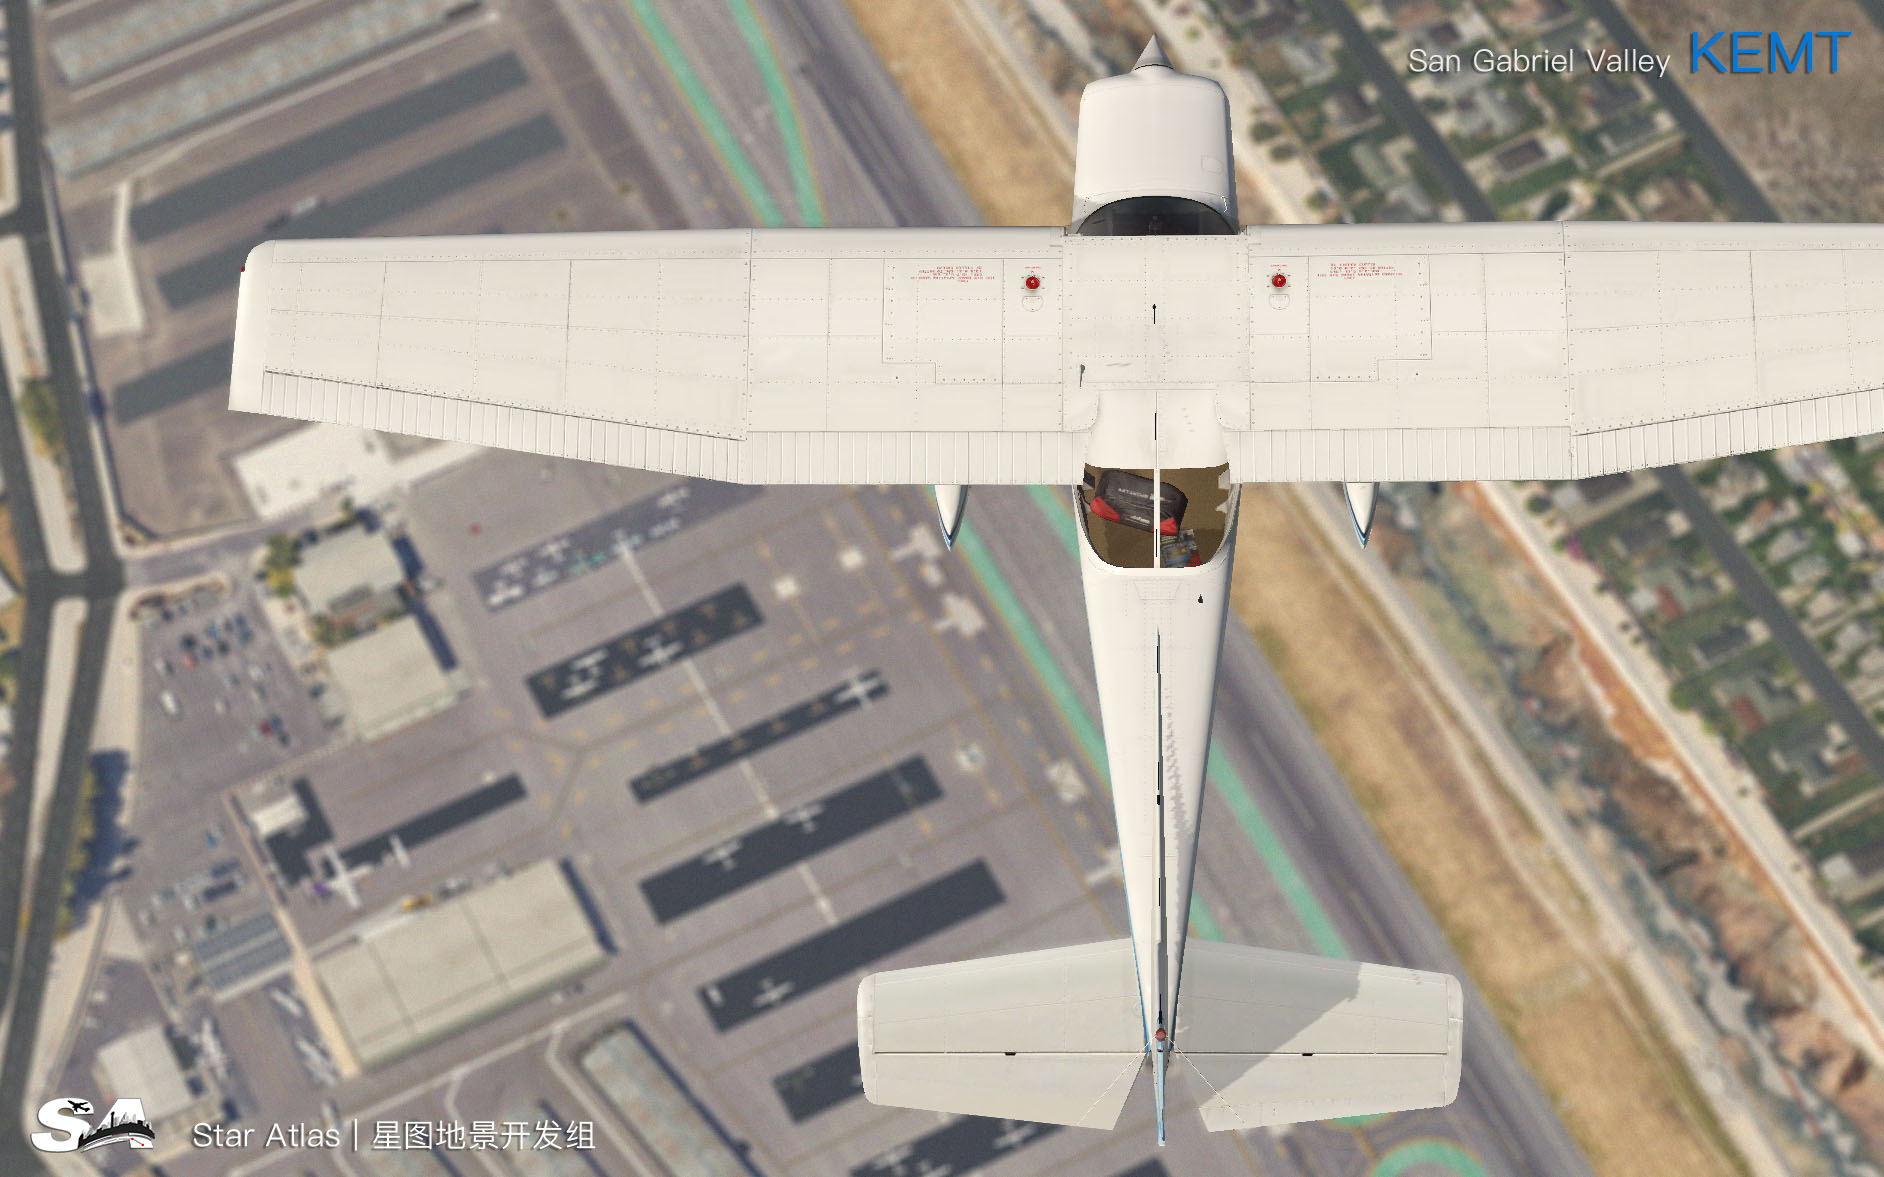 【X-Plane】KEMT-圣盖博谷机场 HD 1.0-9983 